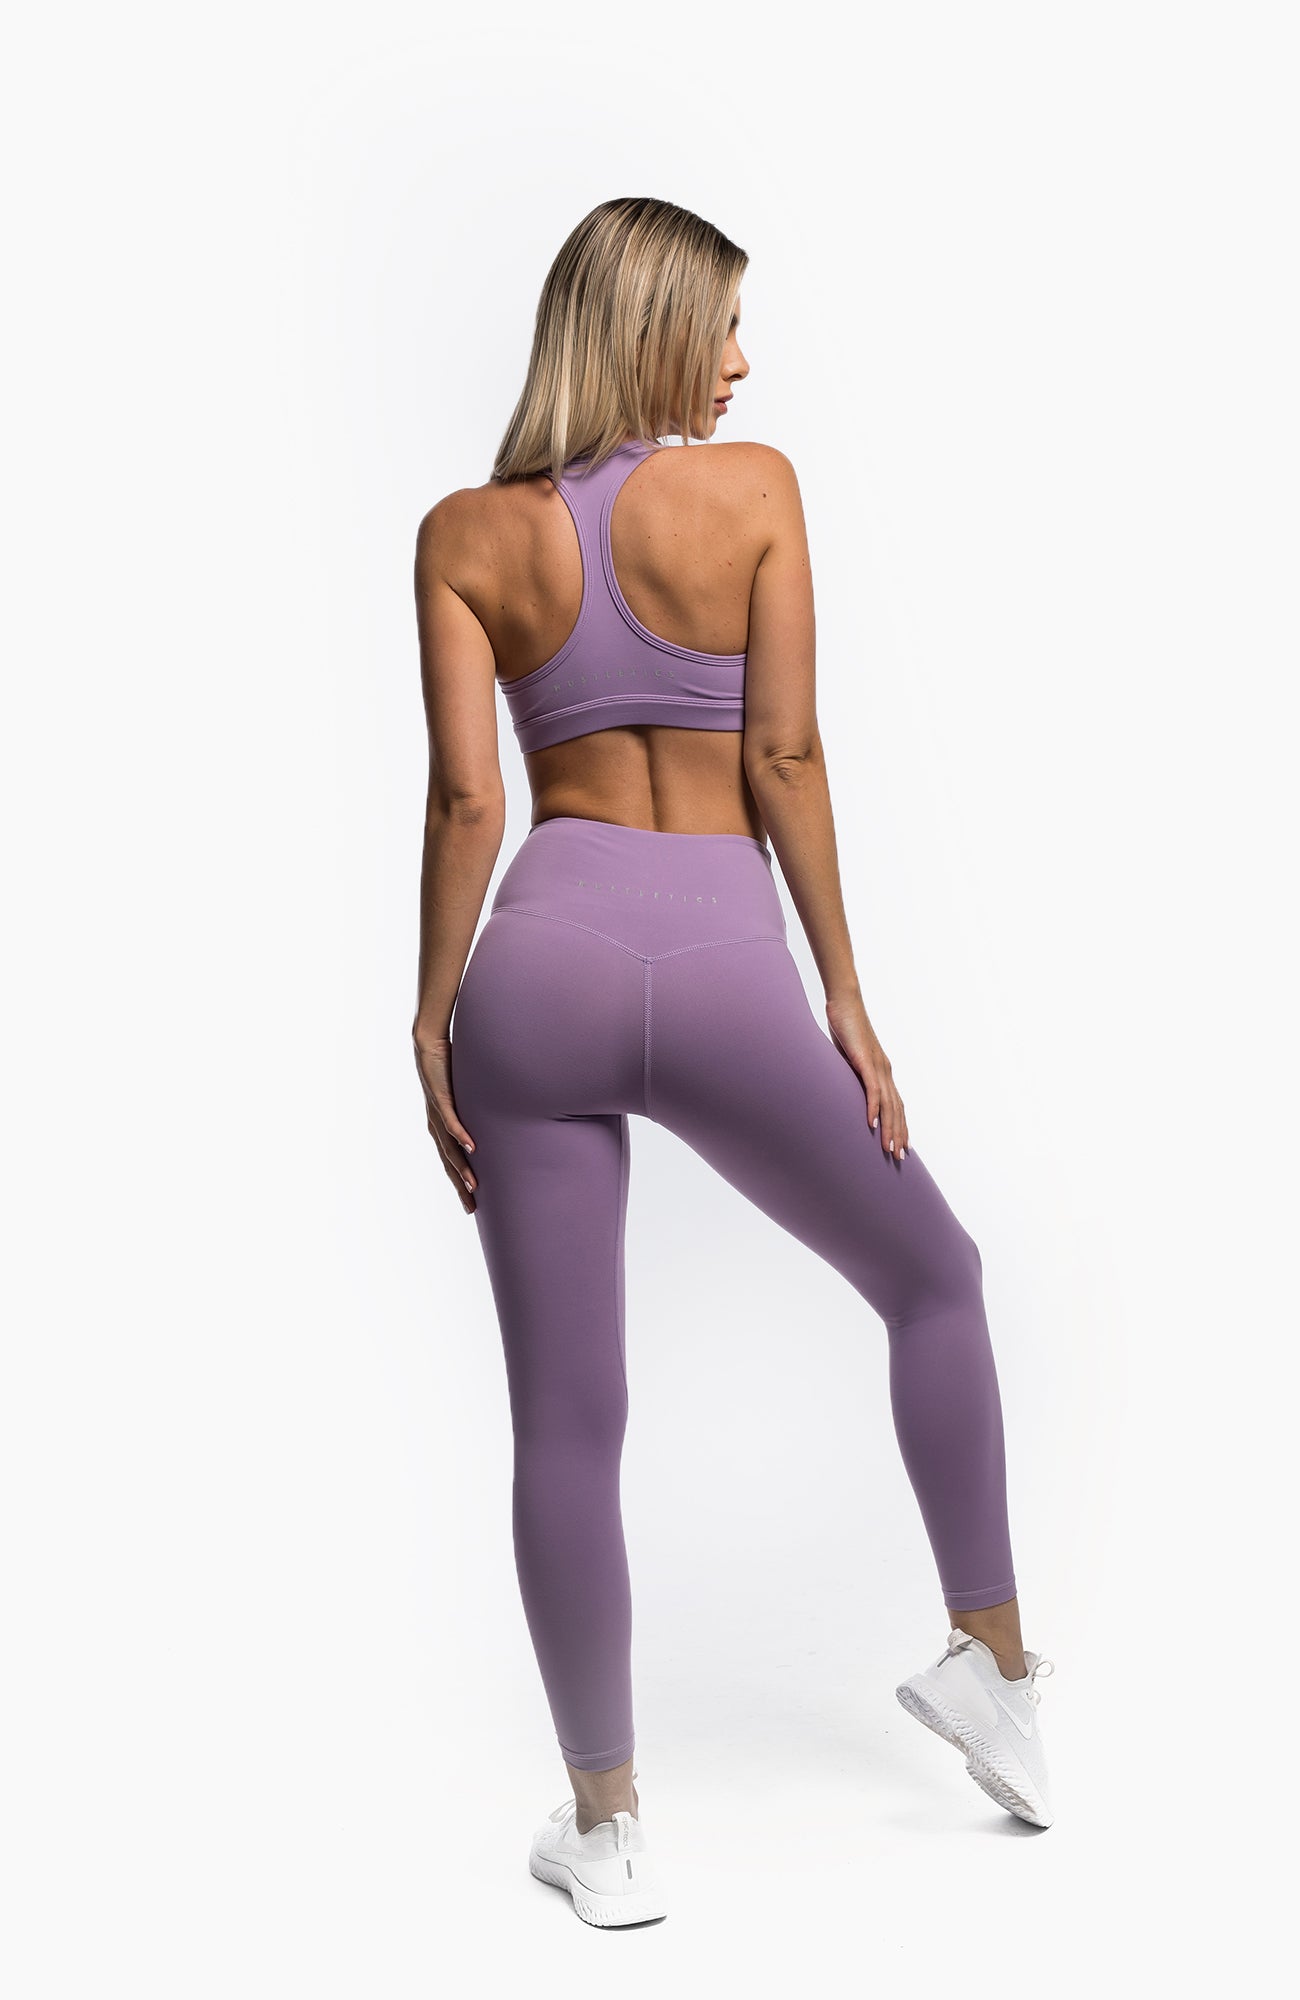 Gymshark Women's Purple Leggings Active 24 Gym Pants Size: M